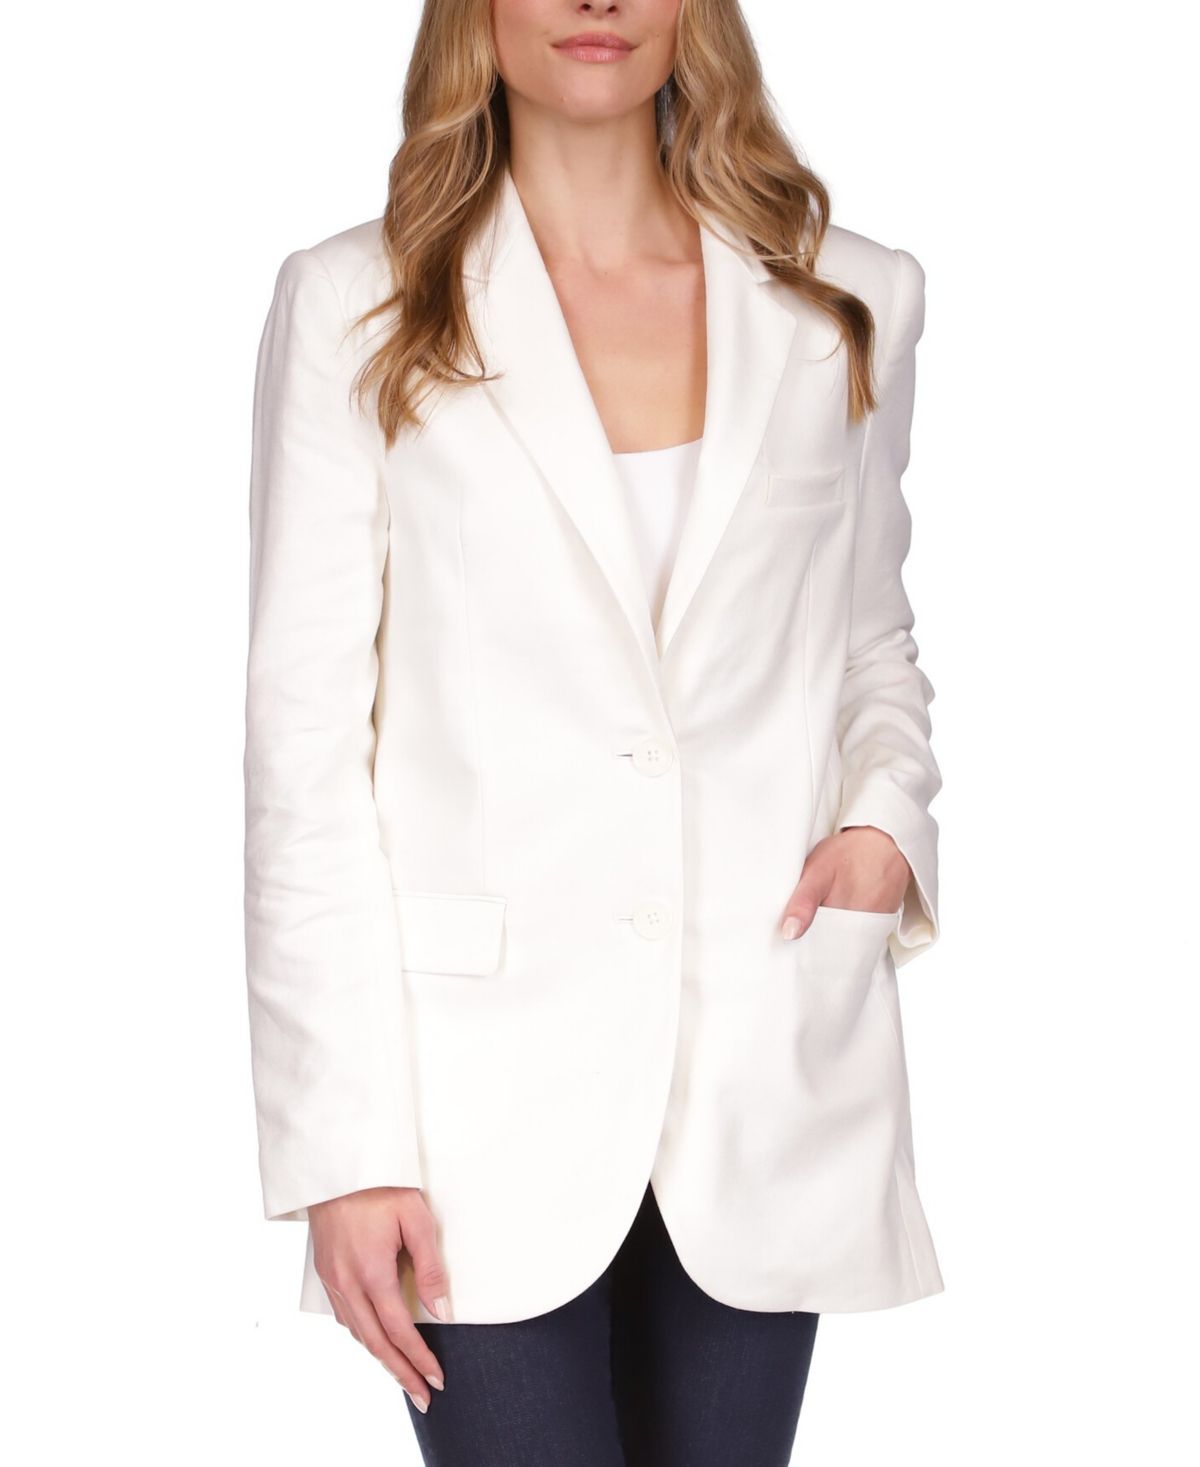 Michael Kors Women's Jacket Sz 4 -Button Mensy Blazer White